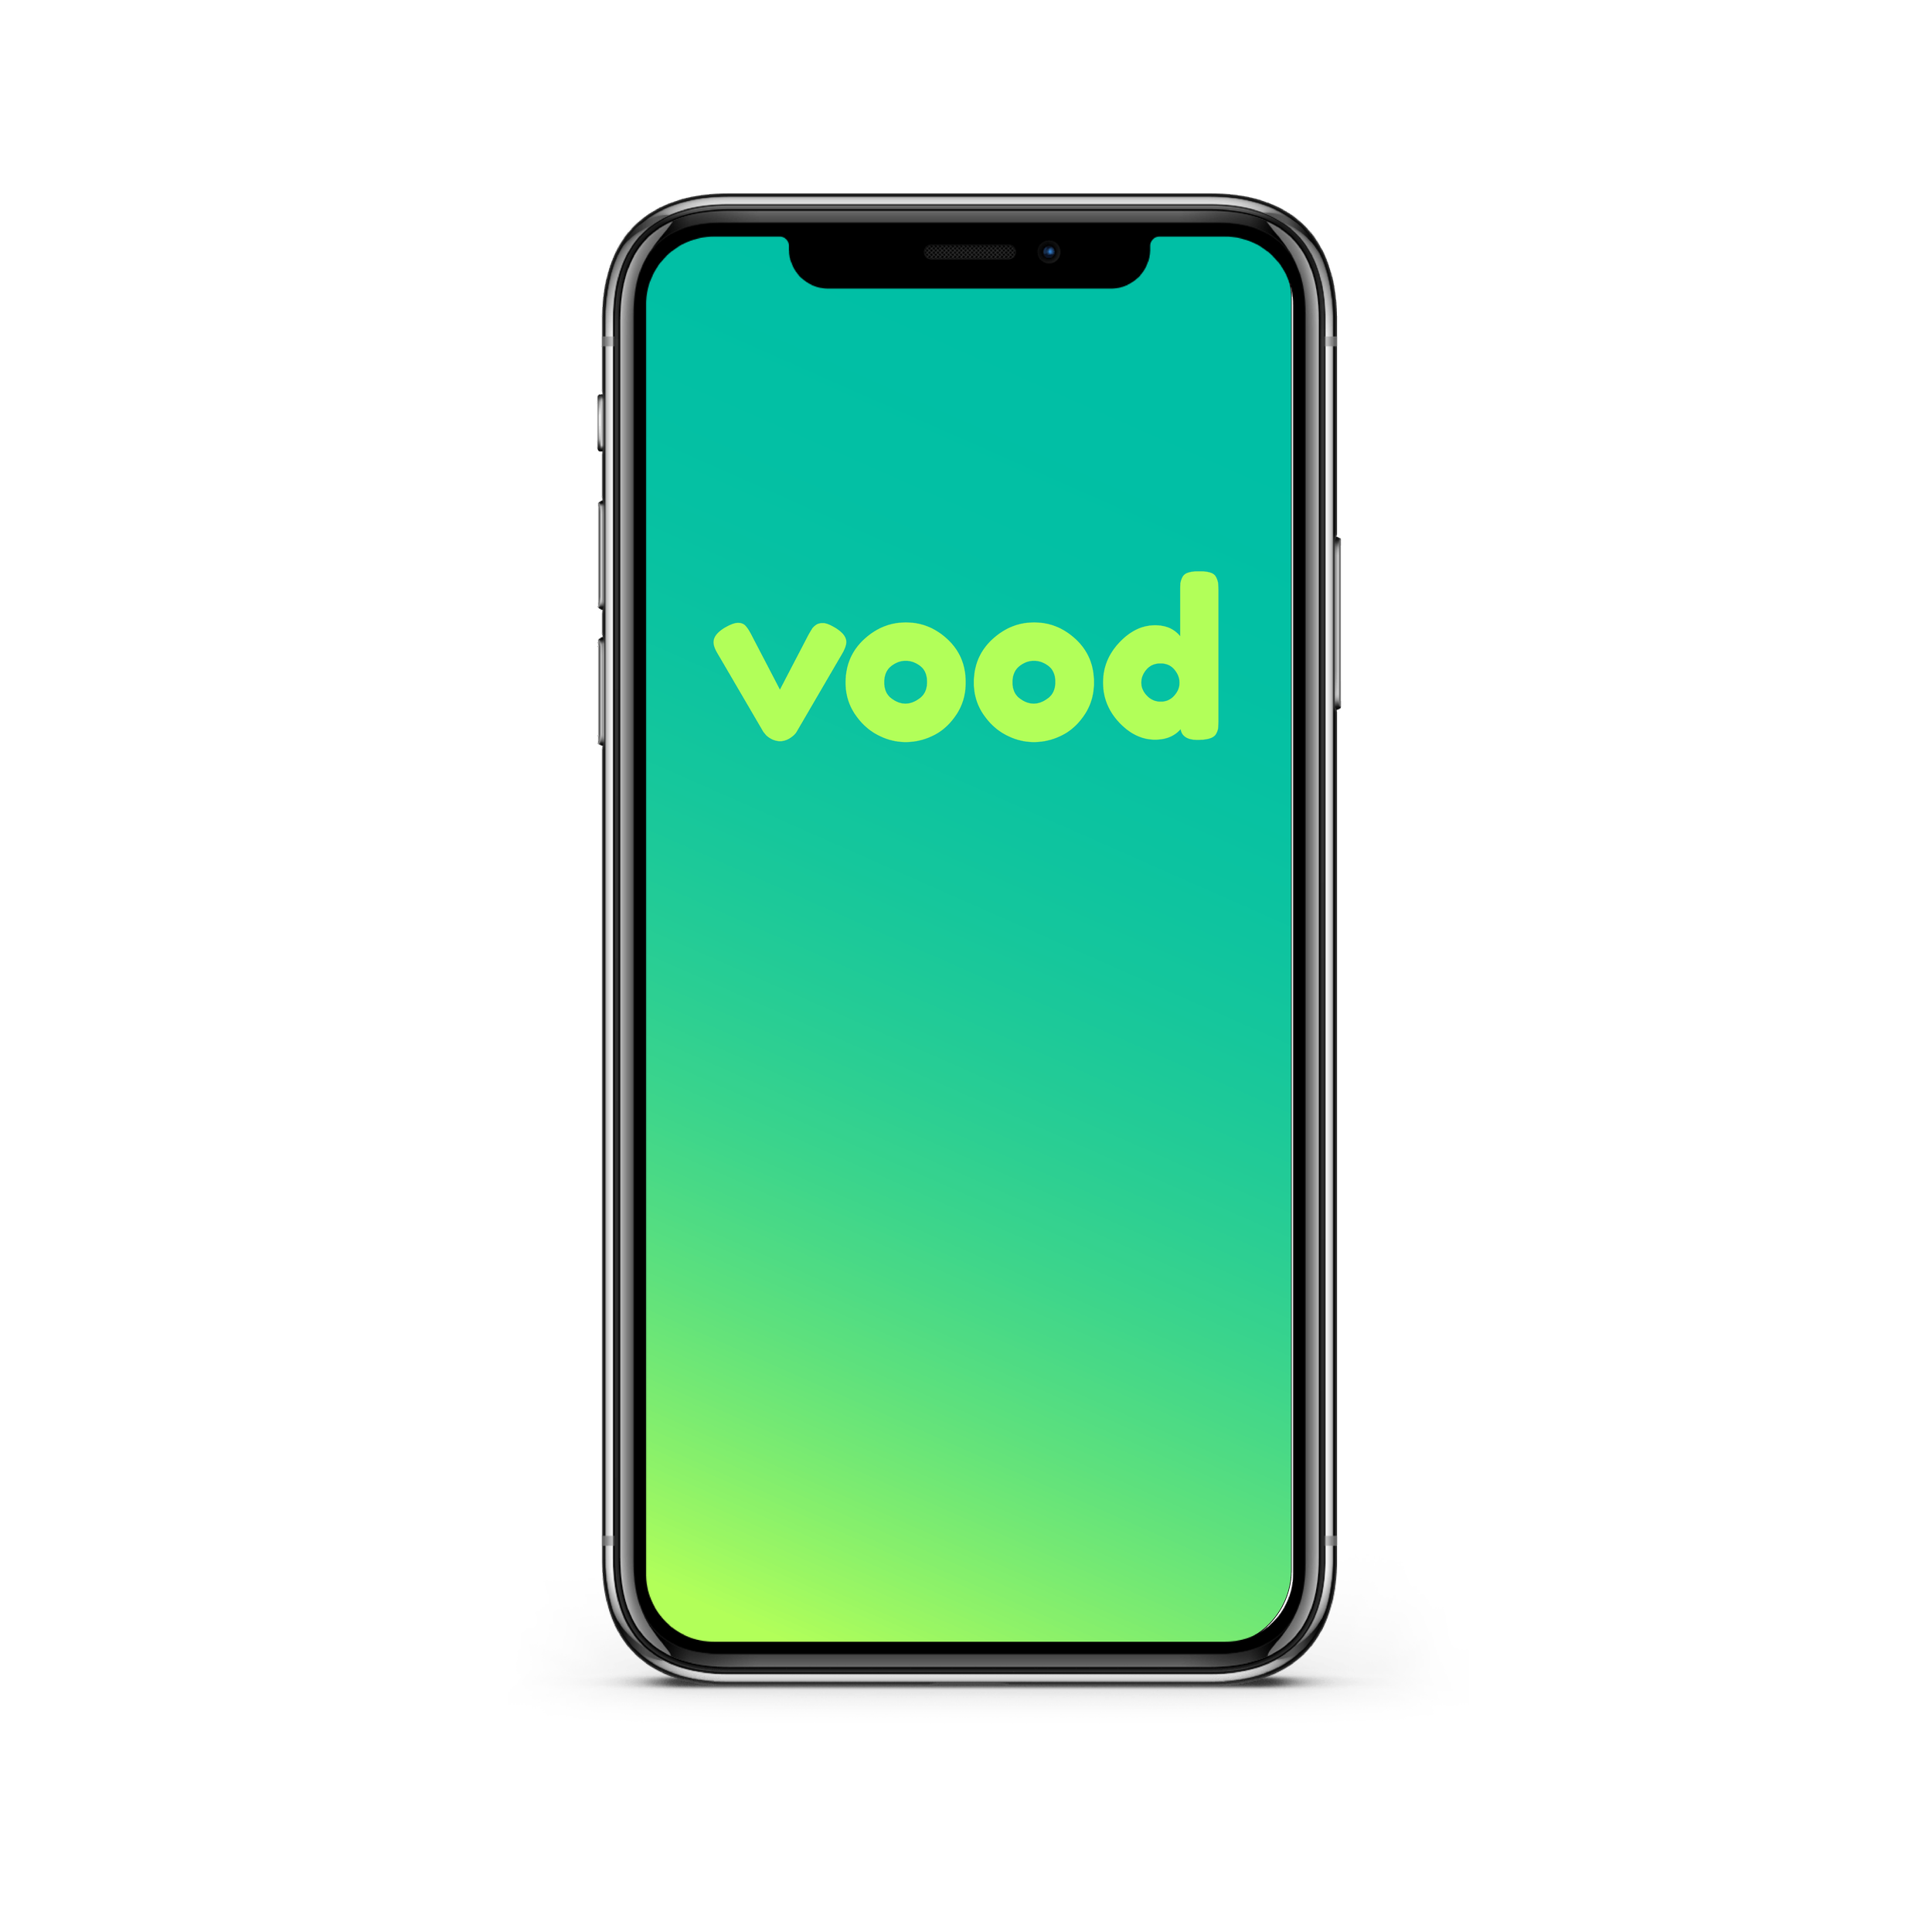 Vood Loading Screen